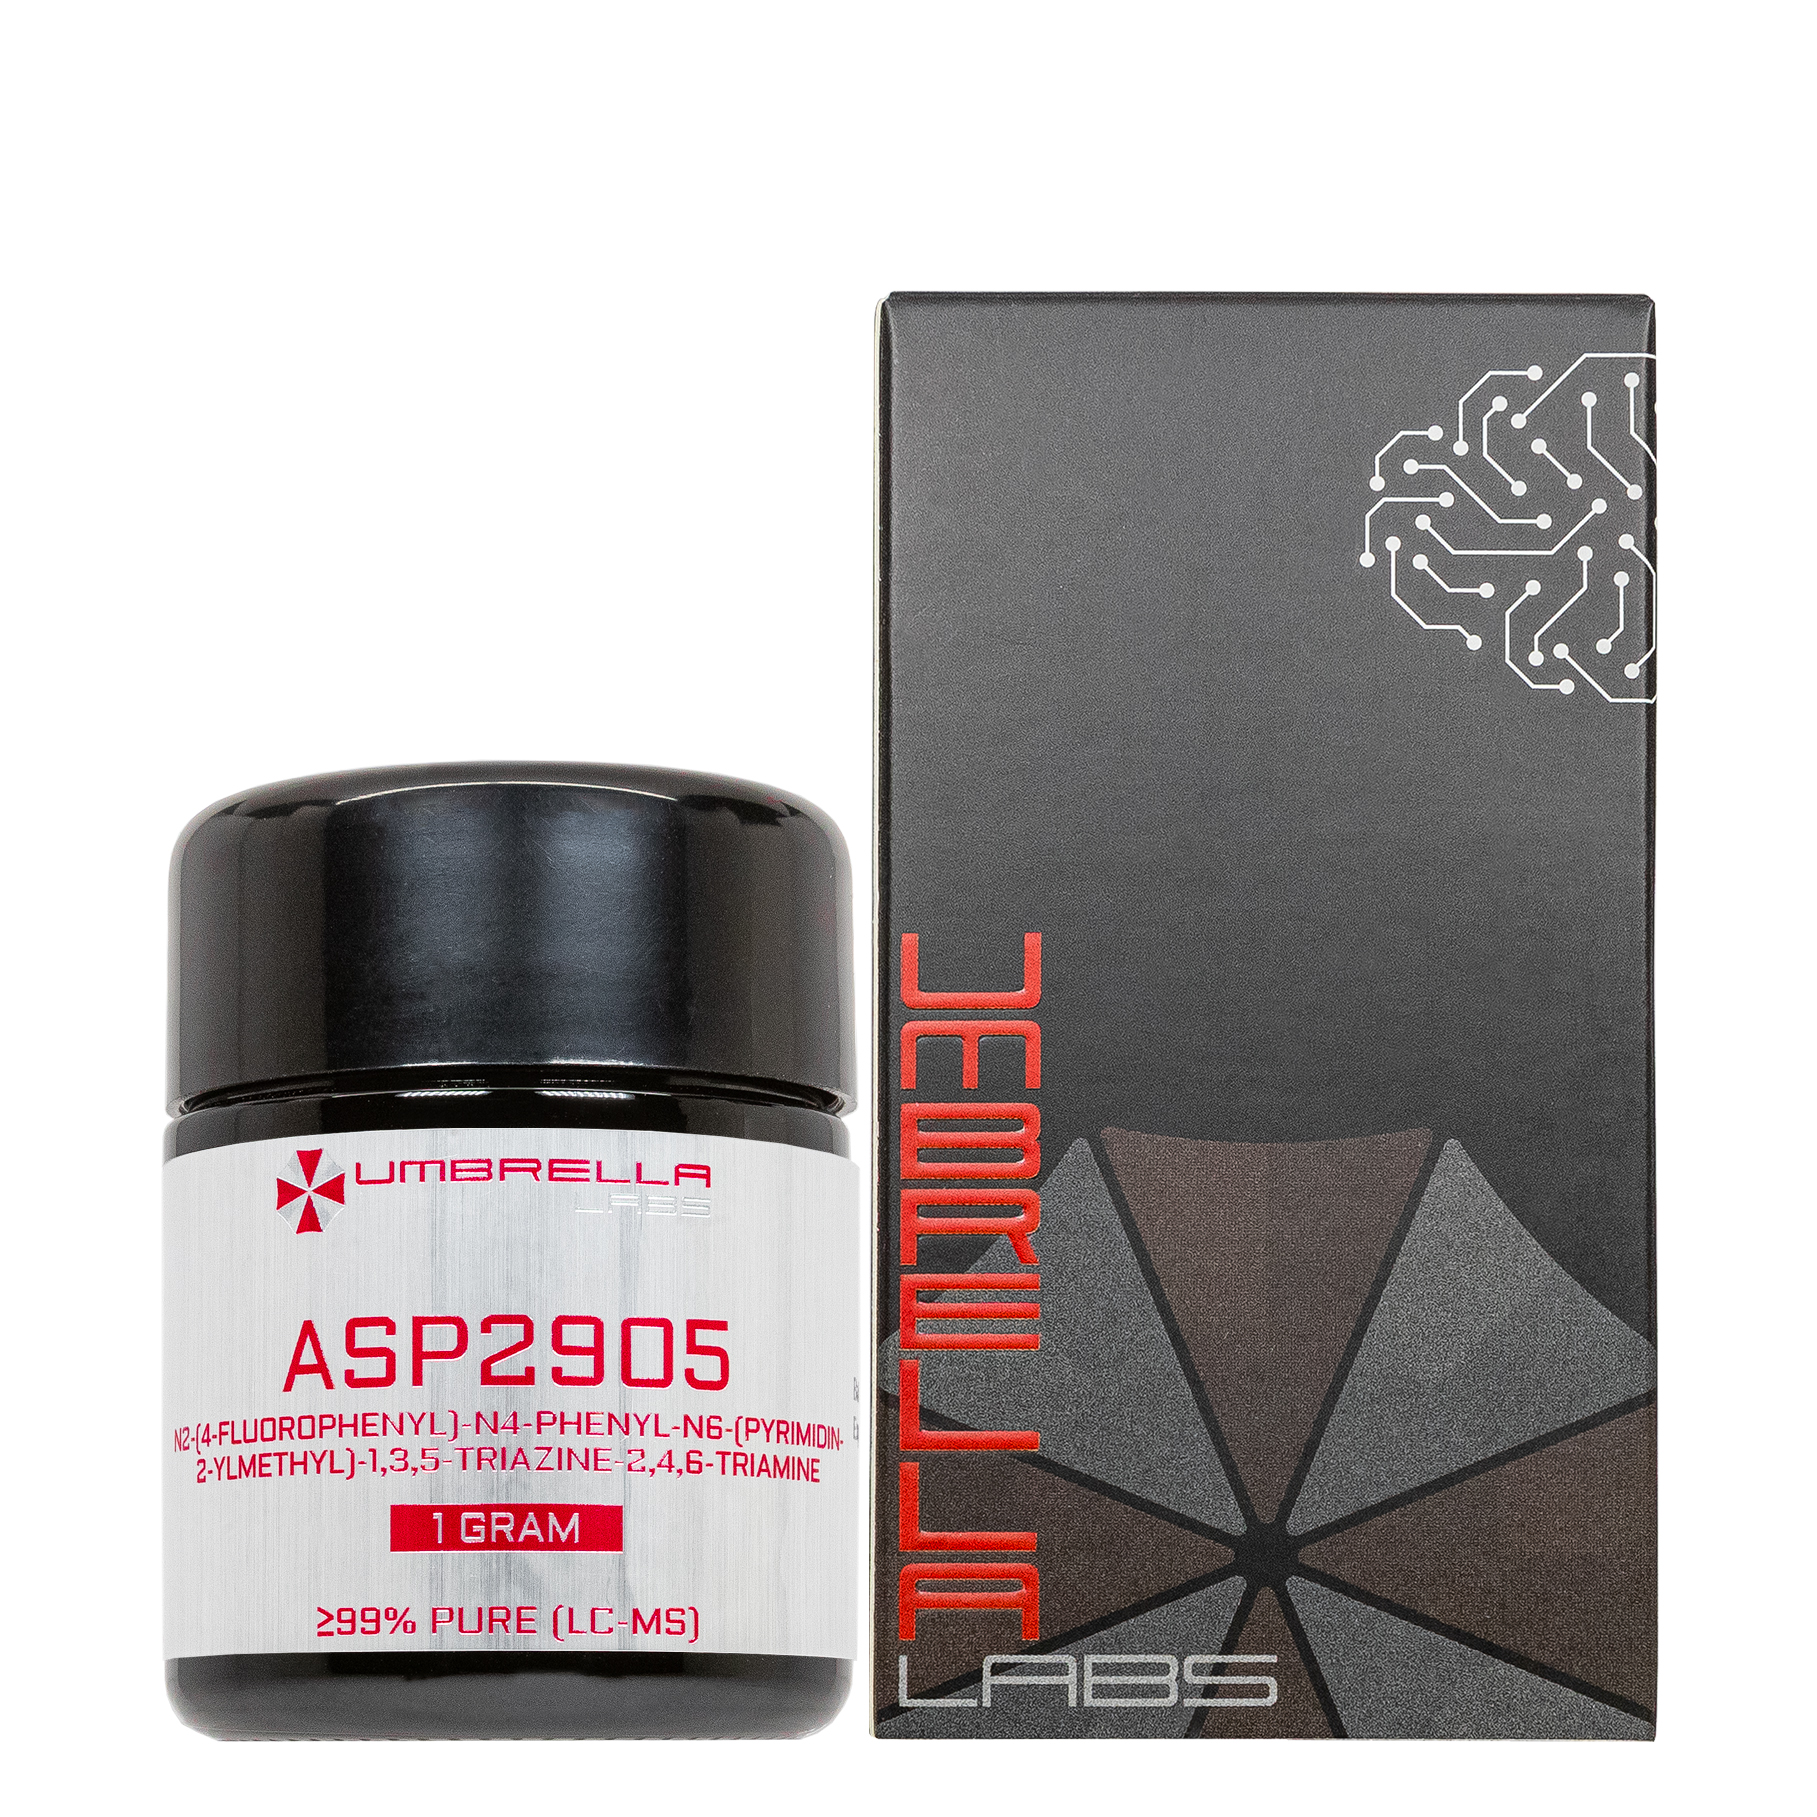 asp2905 powder (1 gram)